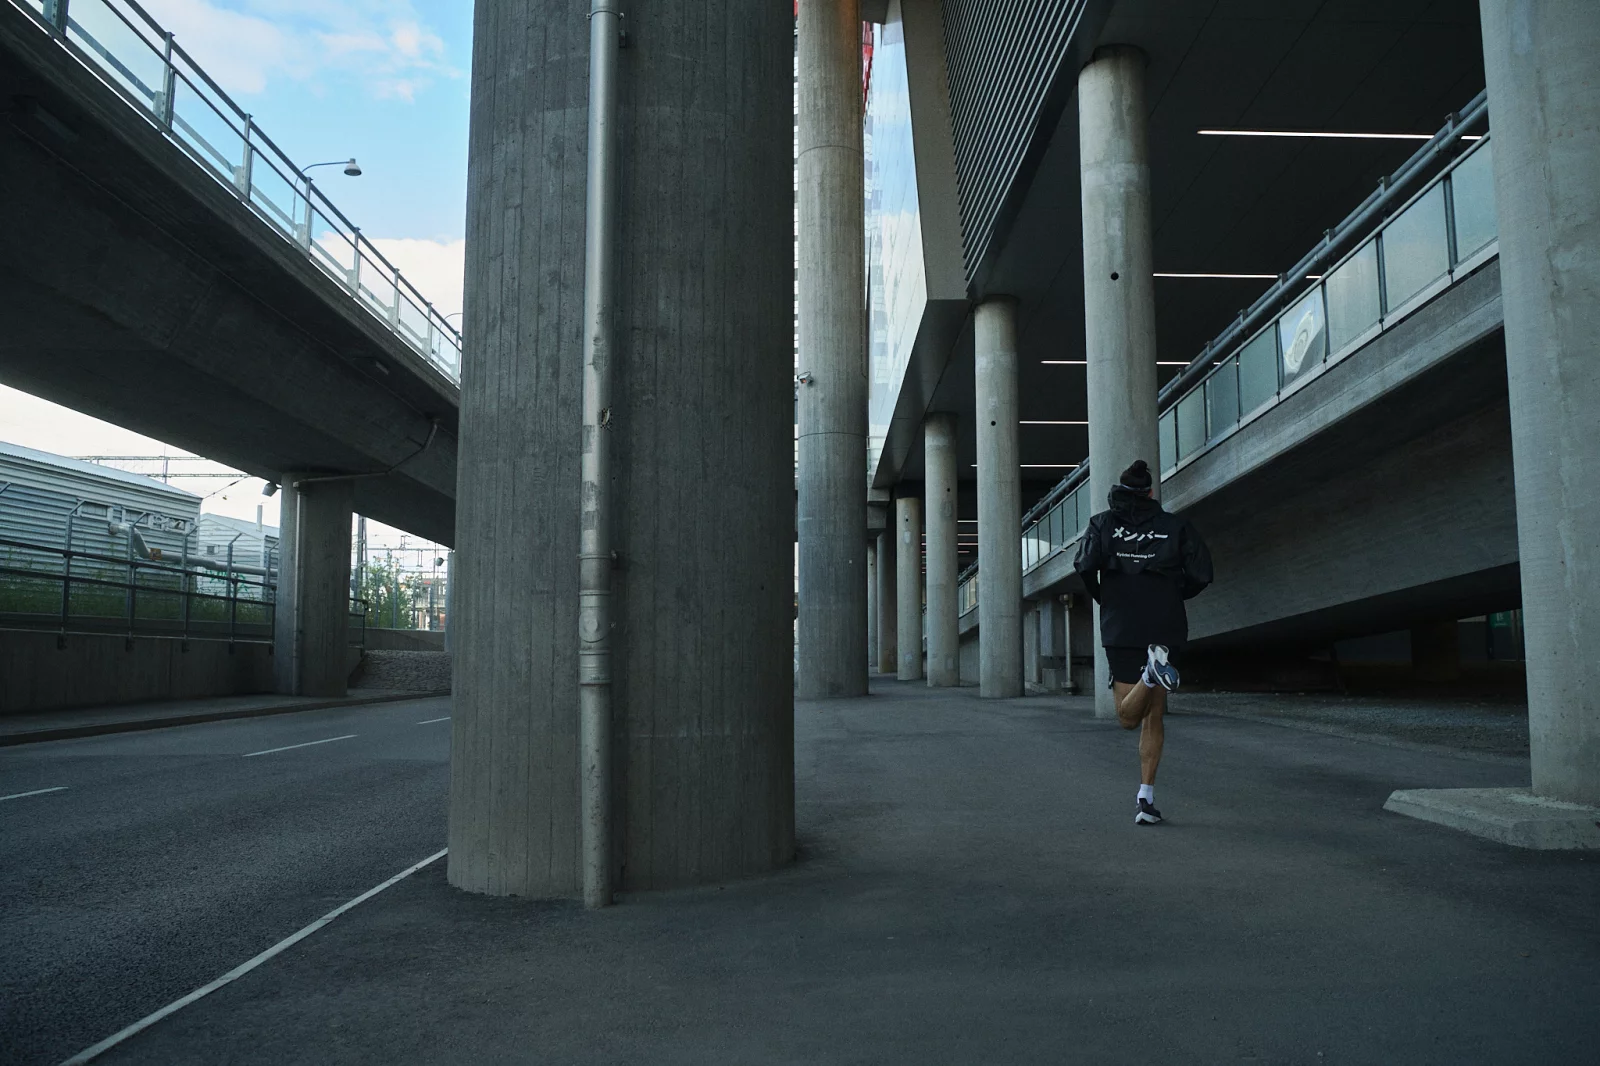 Kyodai Running Club 10 by Daniel BLOM